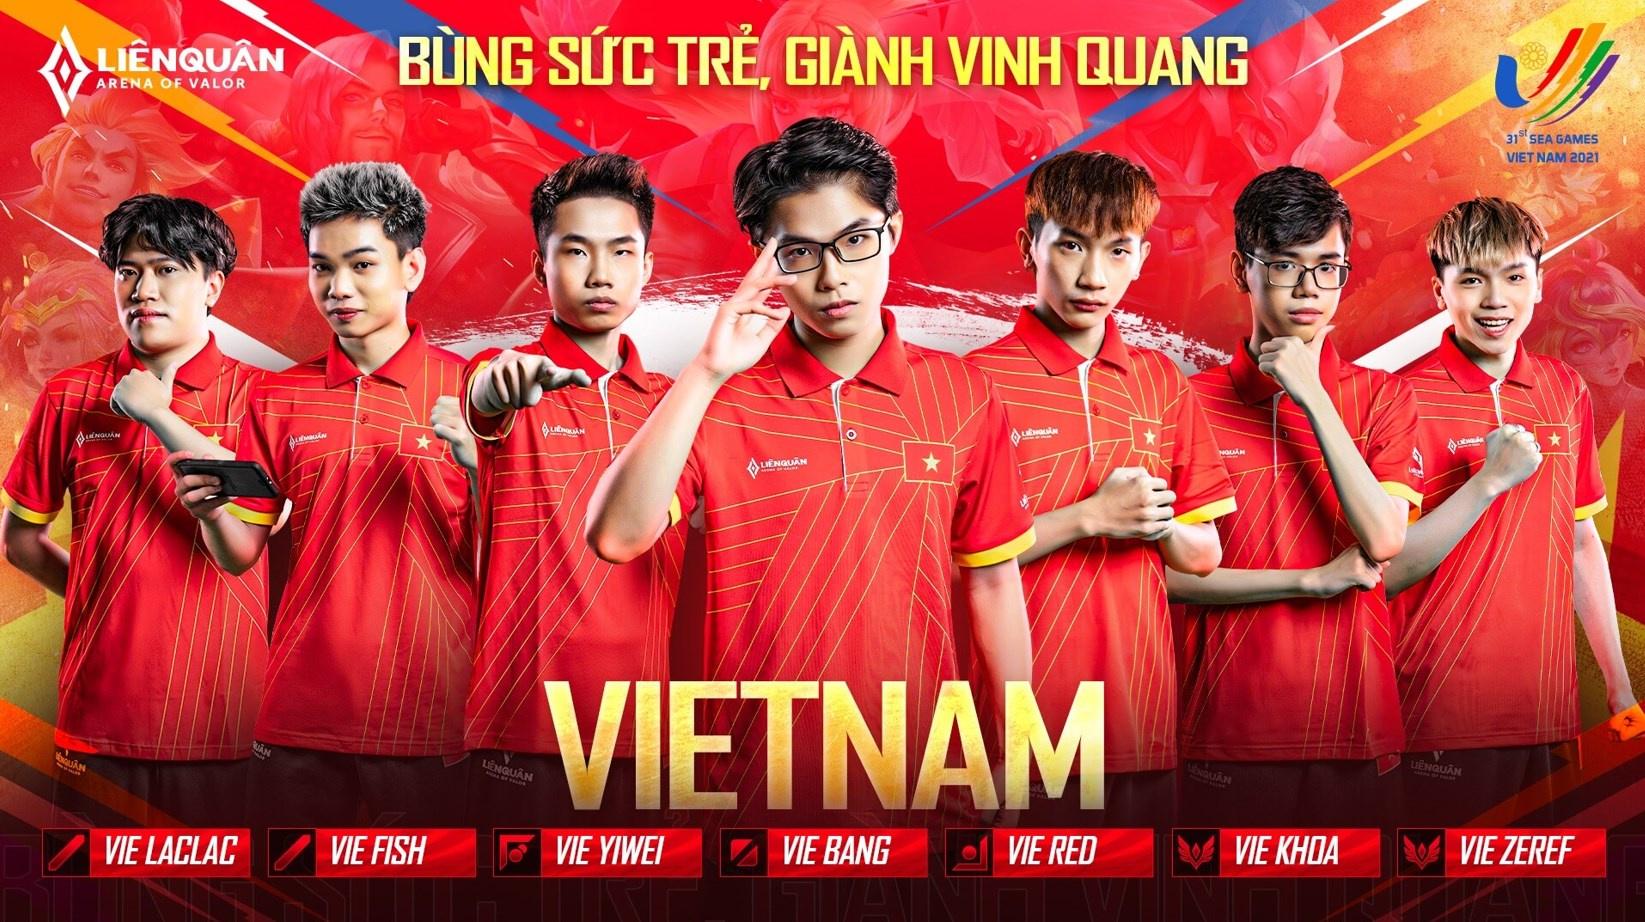 Đội hình đội tuyển Liên Quân Mobile Việt Nam dự SEA Games 31